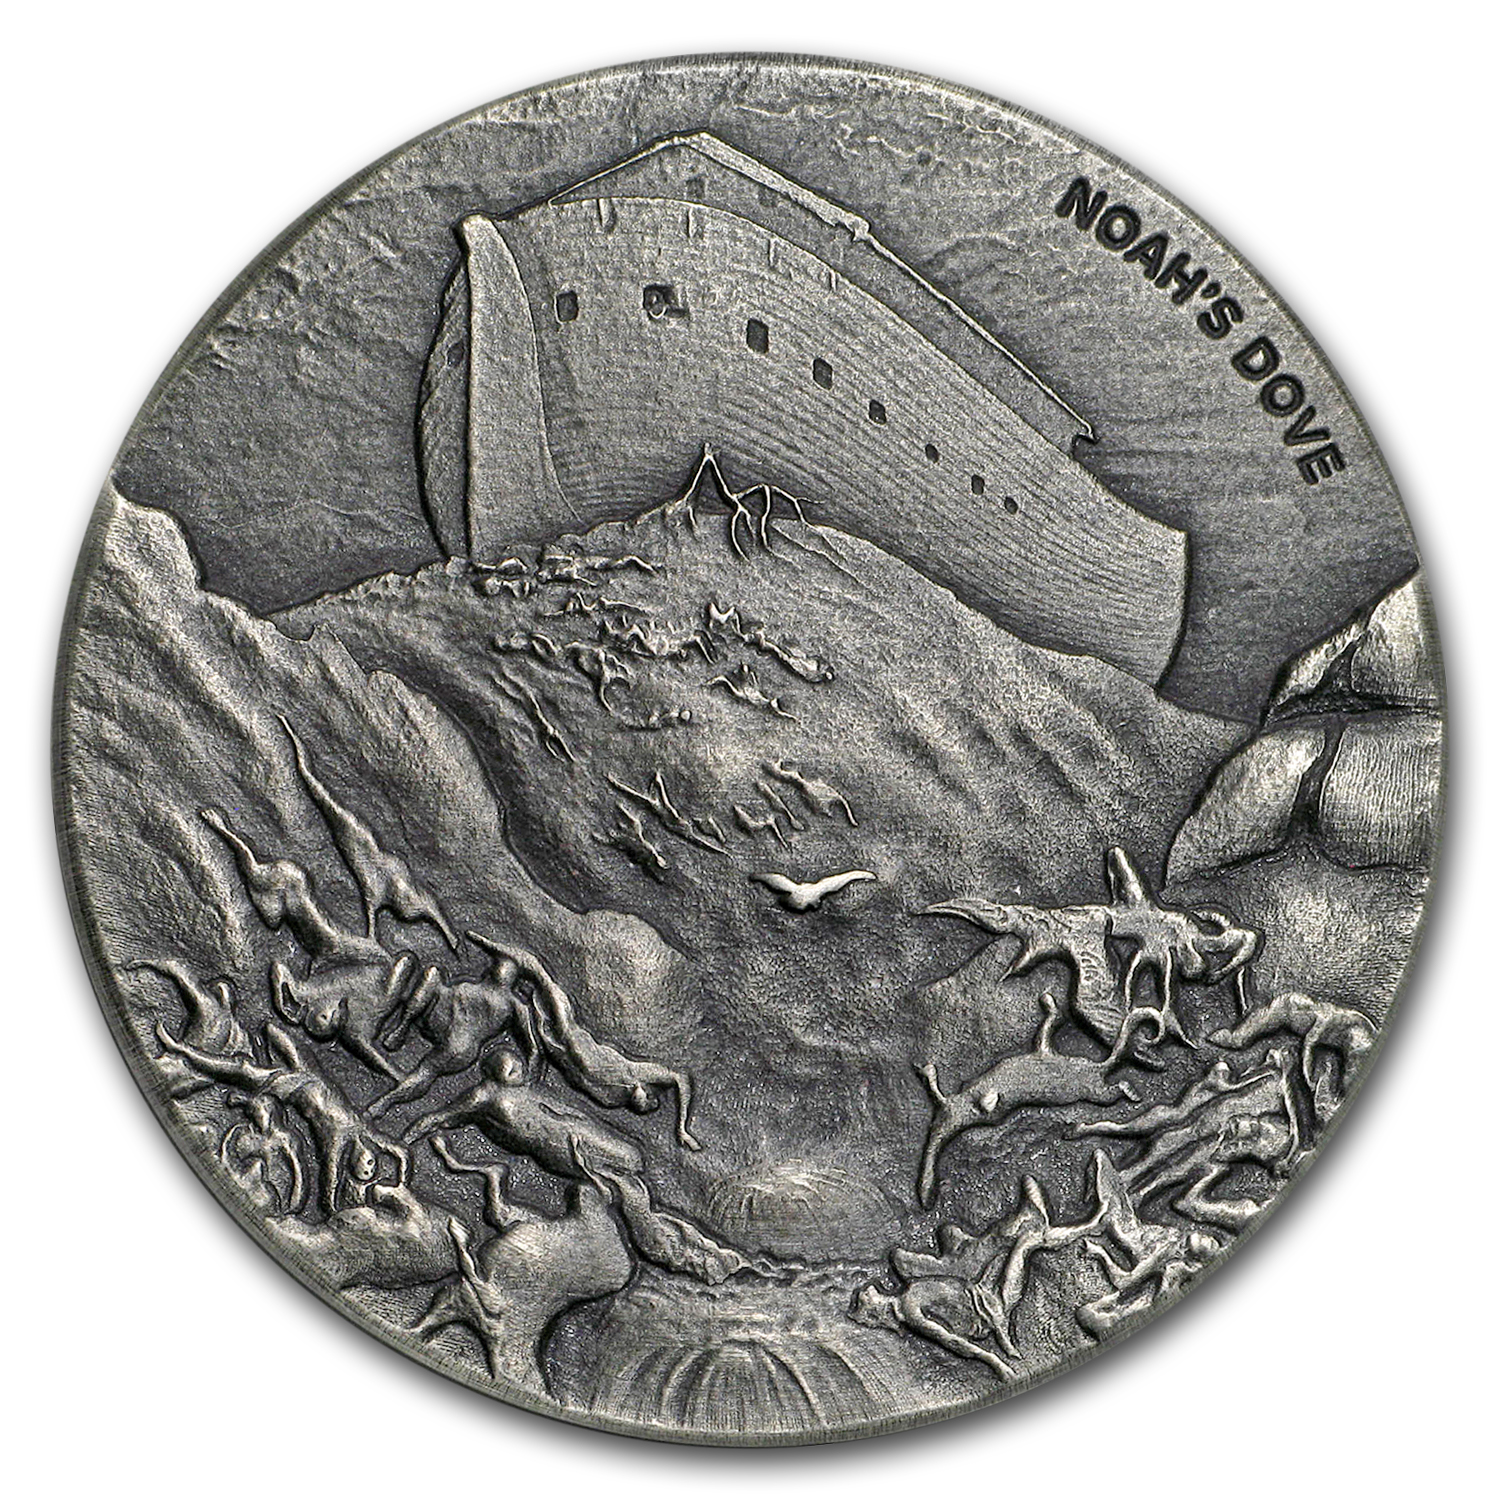 Buy 2018 2 oz Silver Coin - Biblical Series (Noah's Dove)